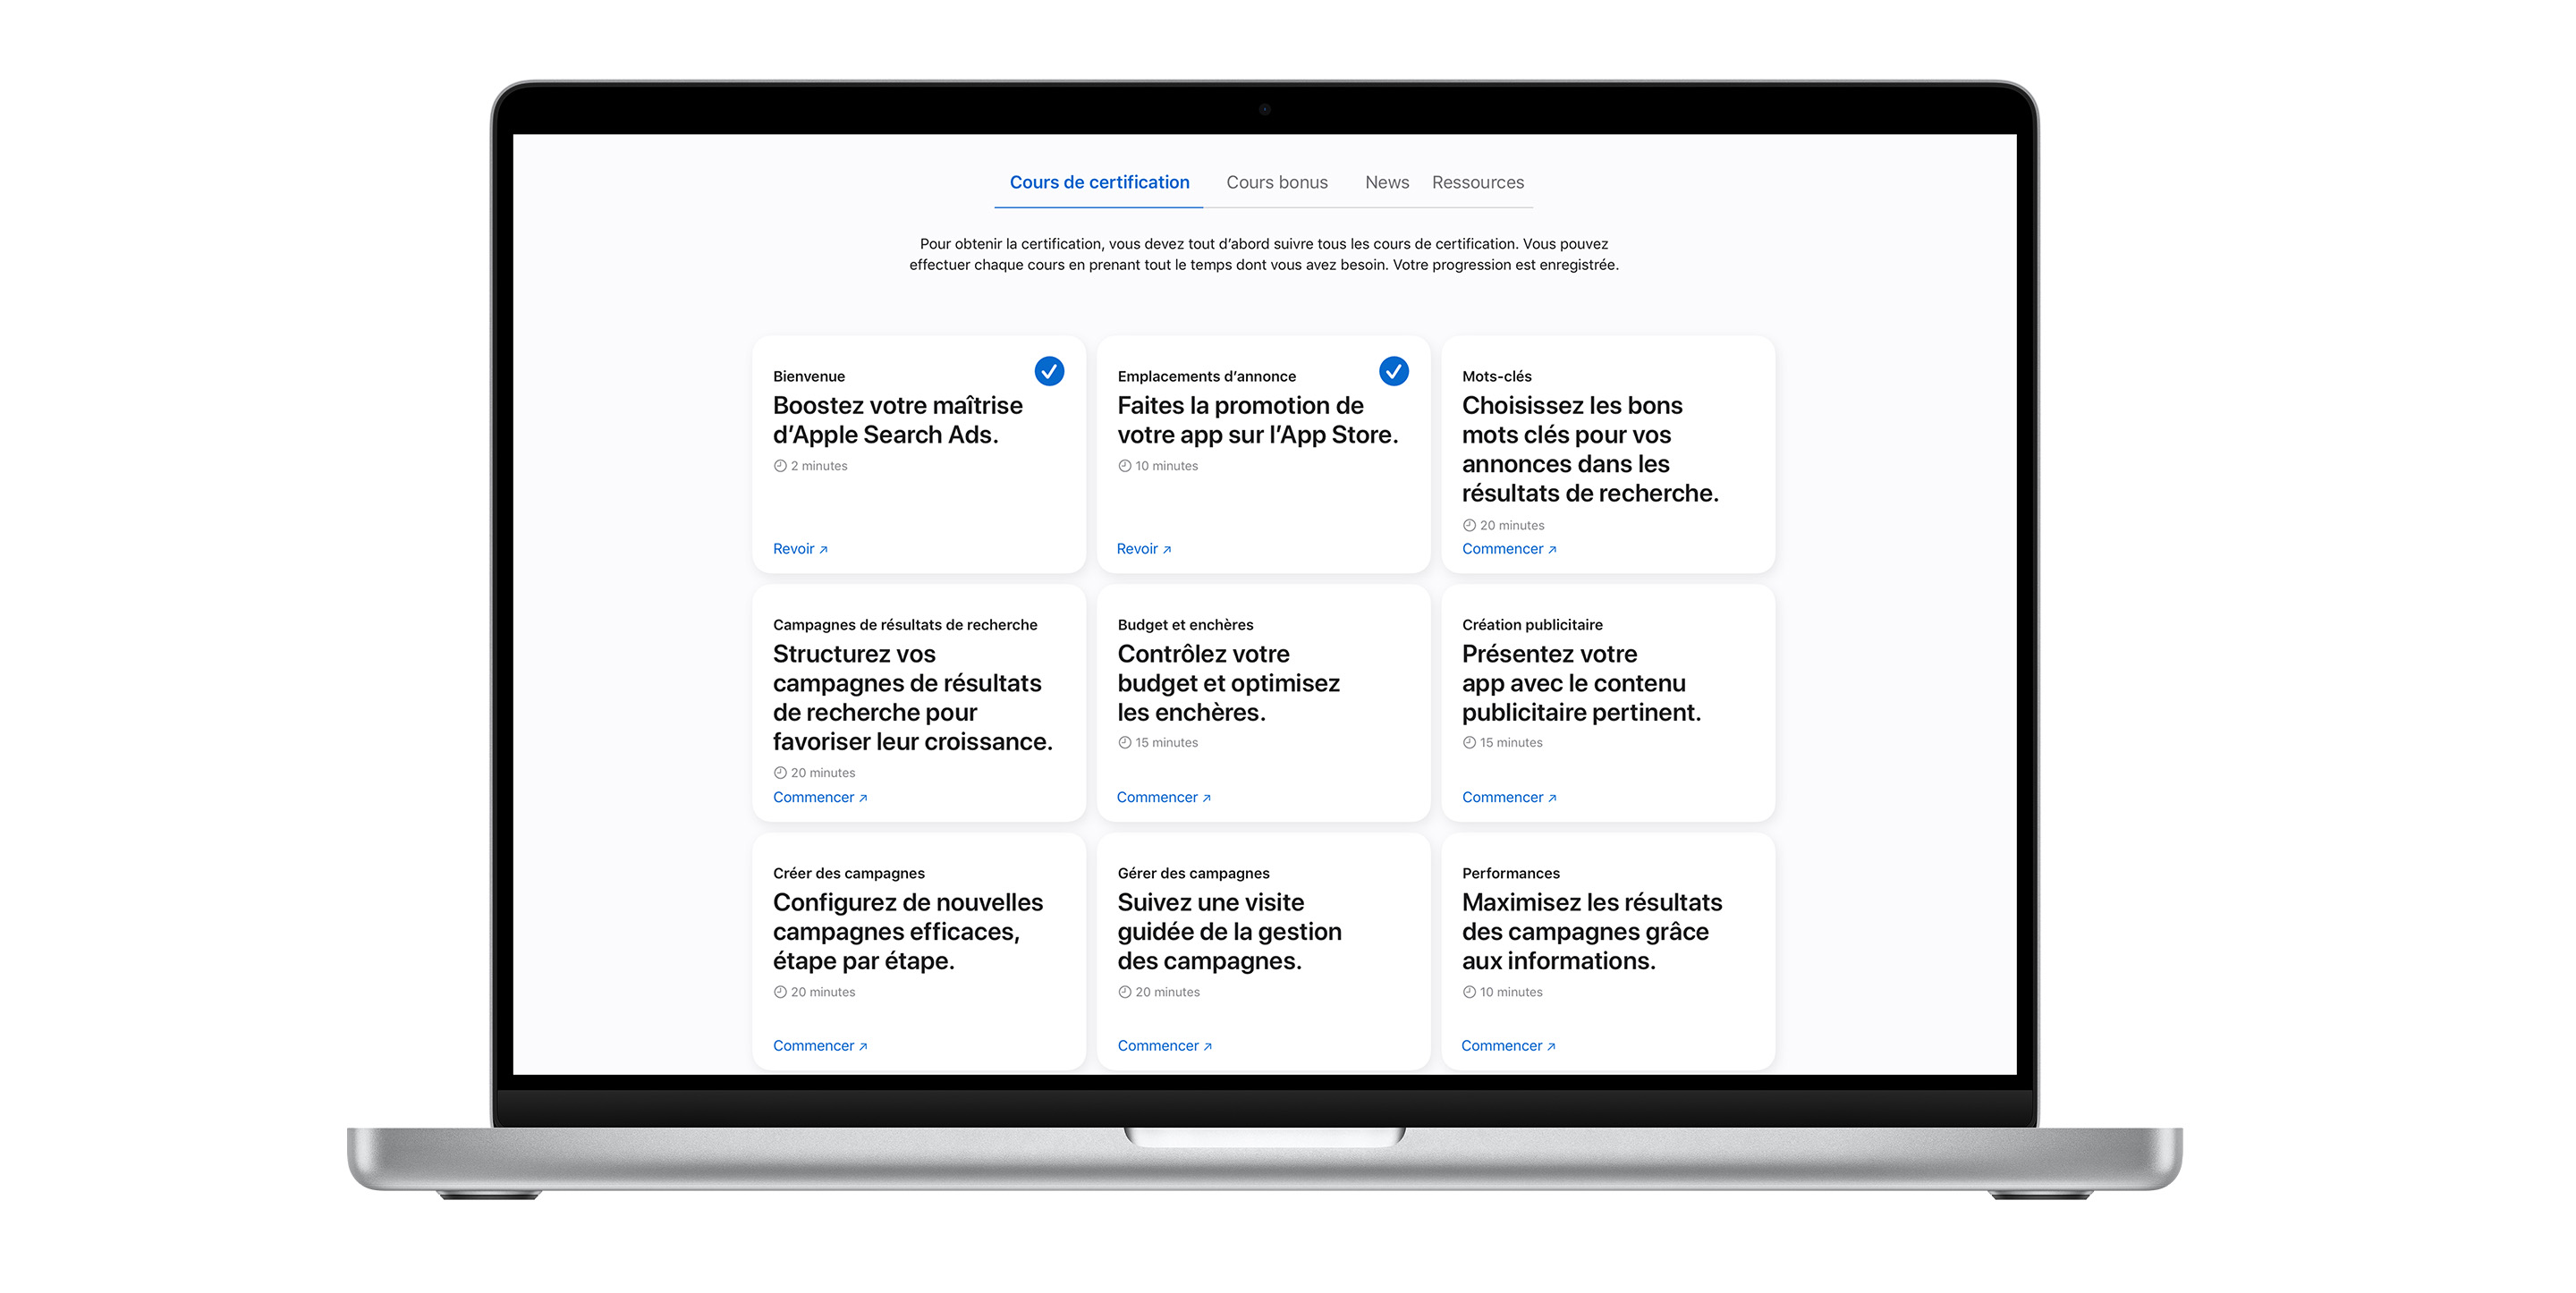 La page des cours de certification Apple Search Ads affichant neuf modules de cours. Les deux premiers cours sont cochés en bleu, indiquant qu’ils sont terminés.